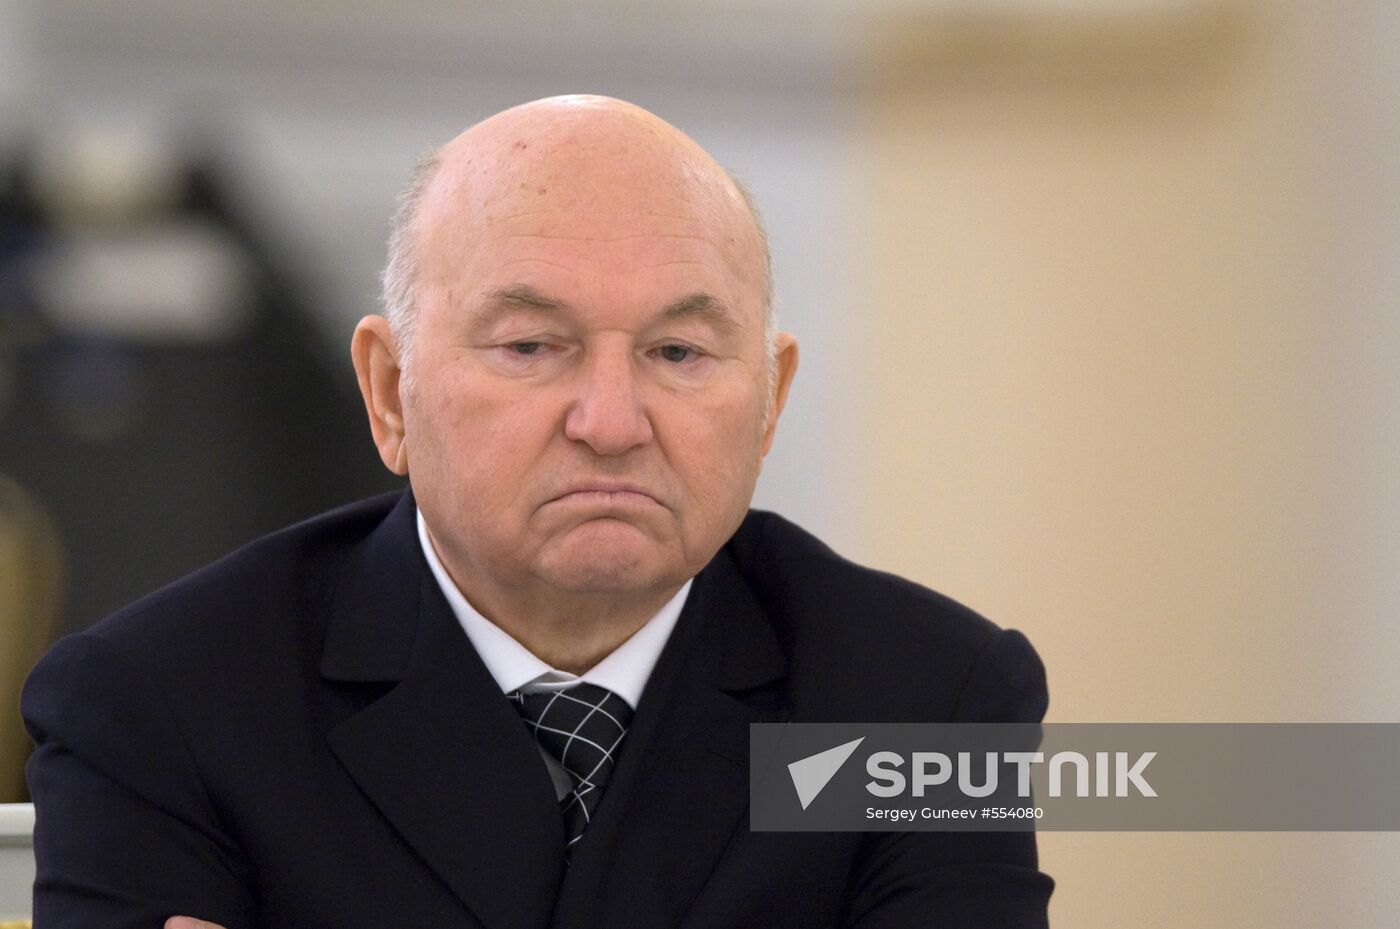 Yury Luzhkov